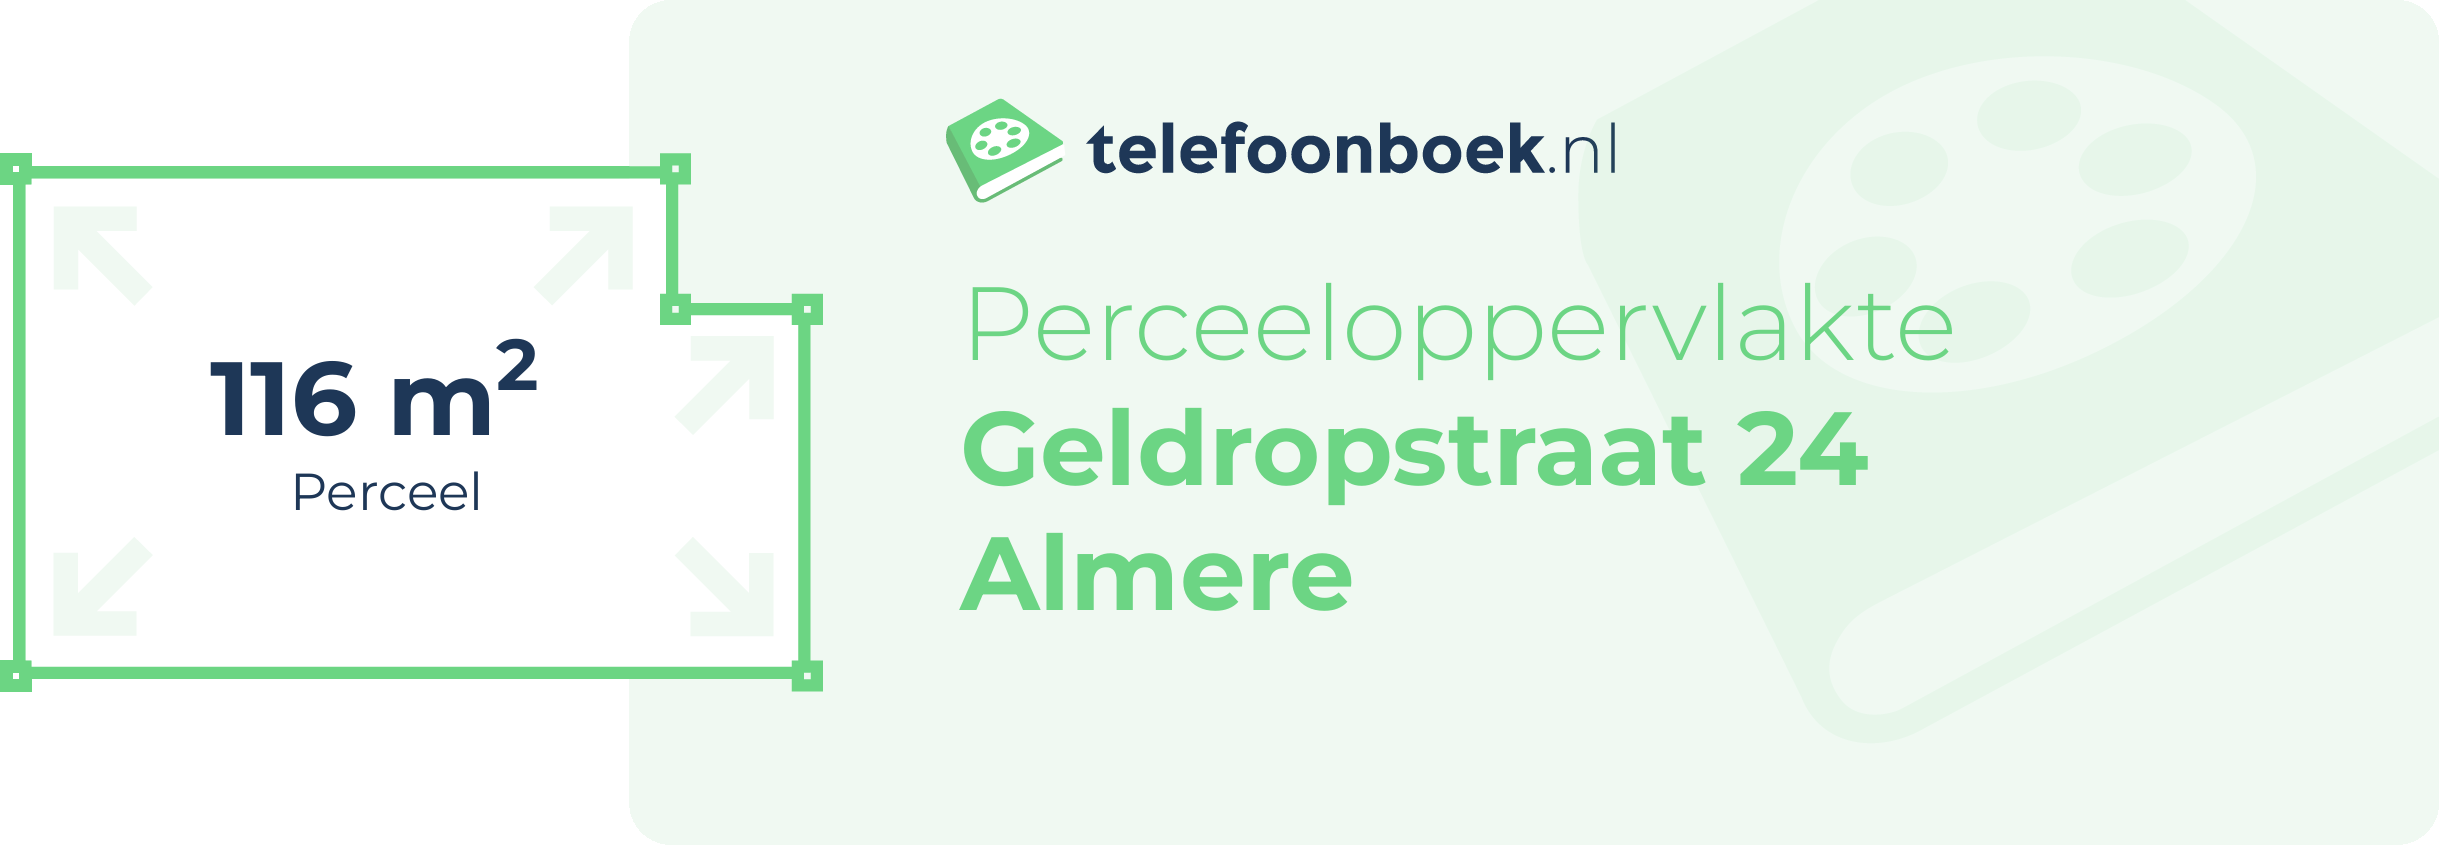 Perceeloppervlakte Geldropstraat 24 Almere